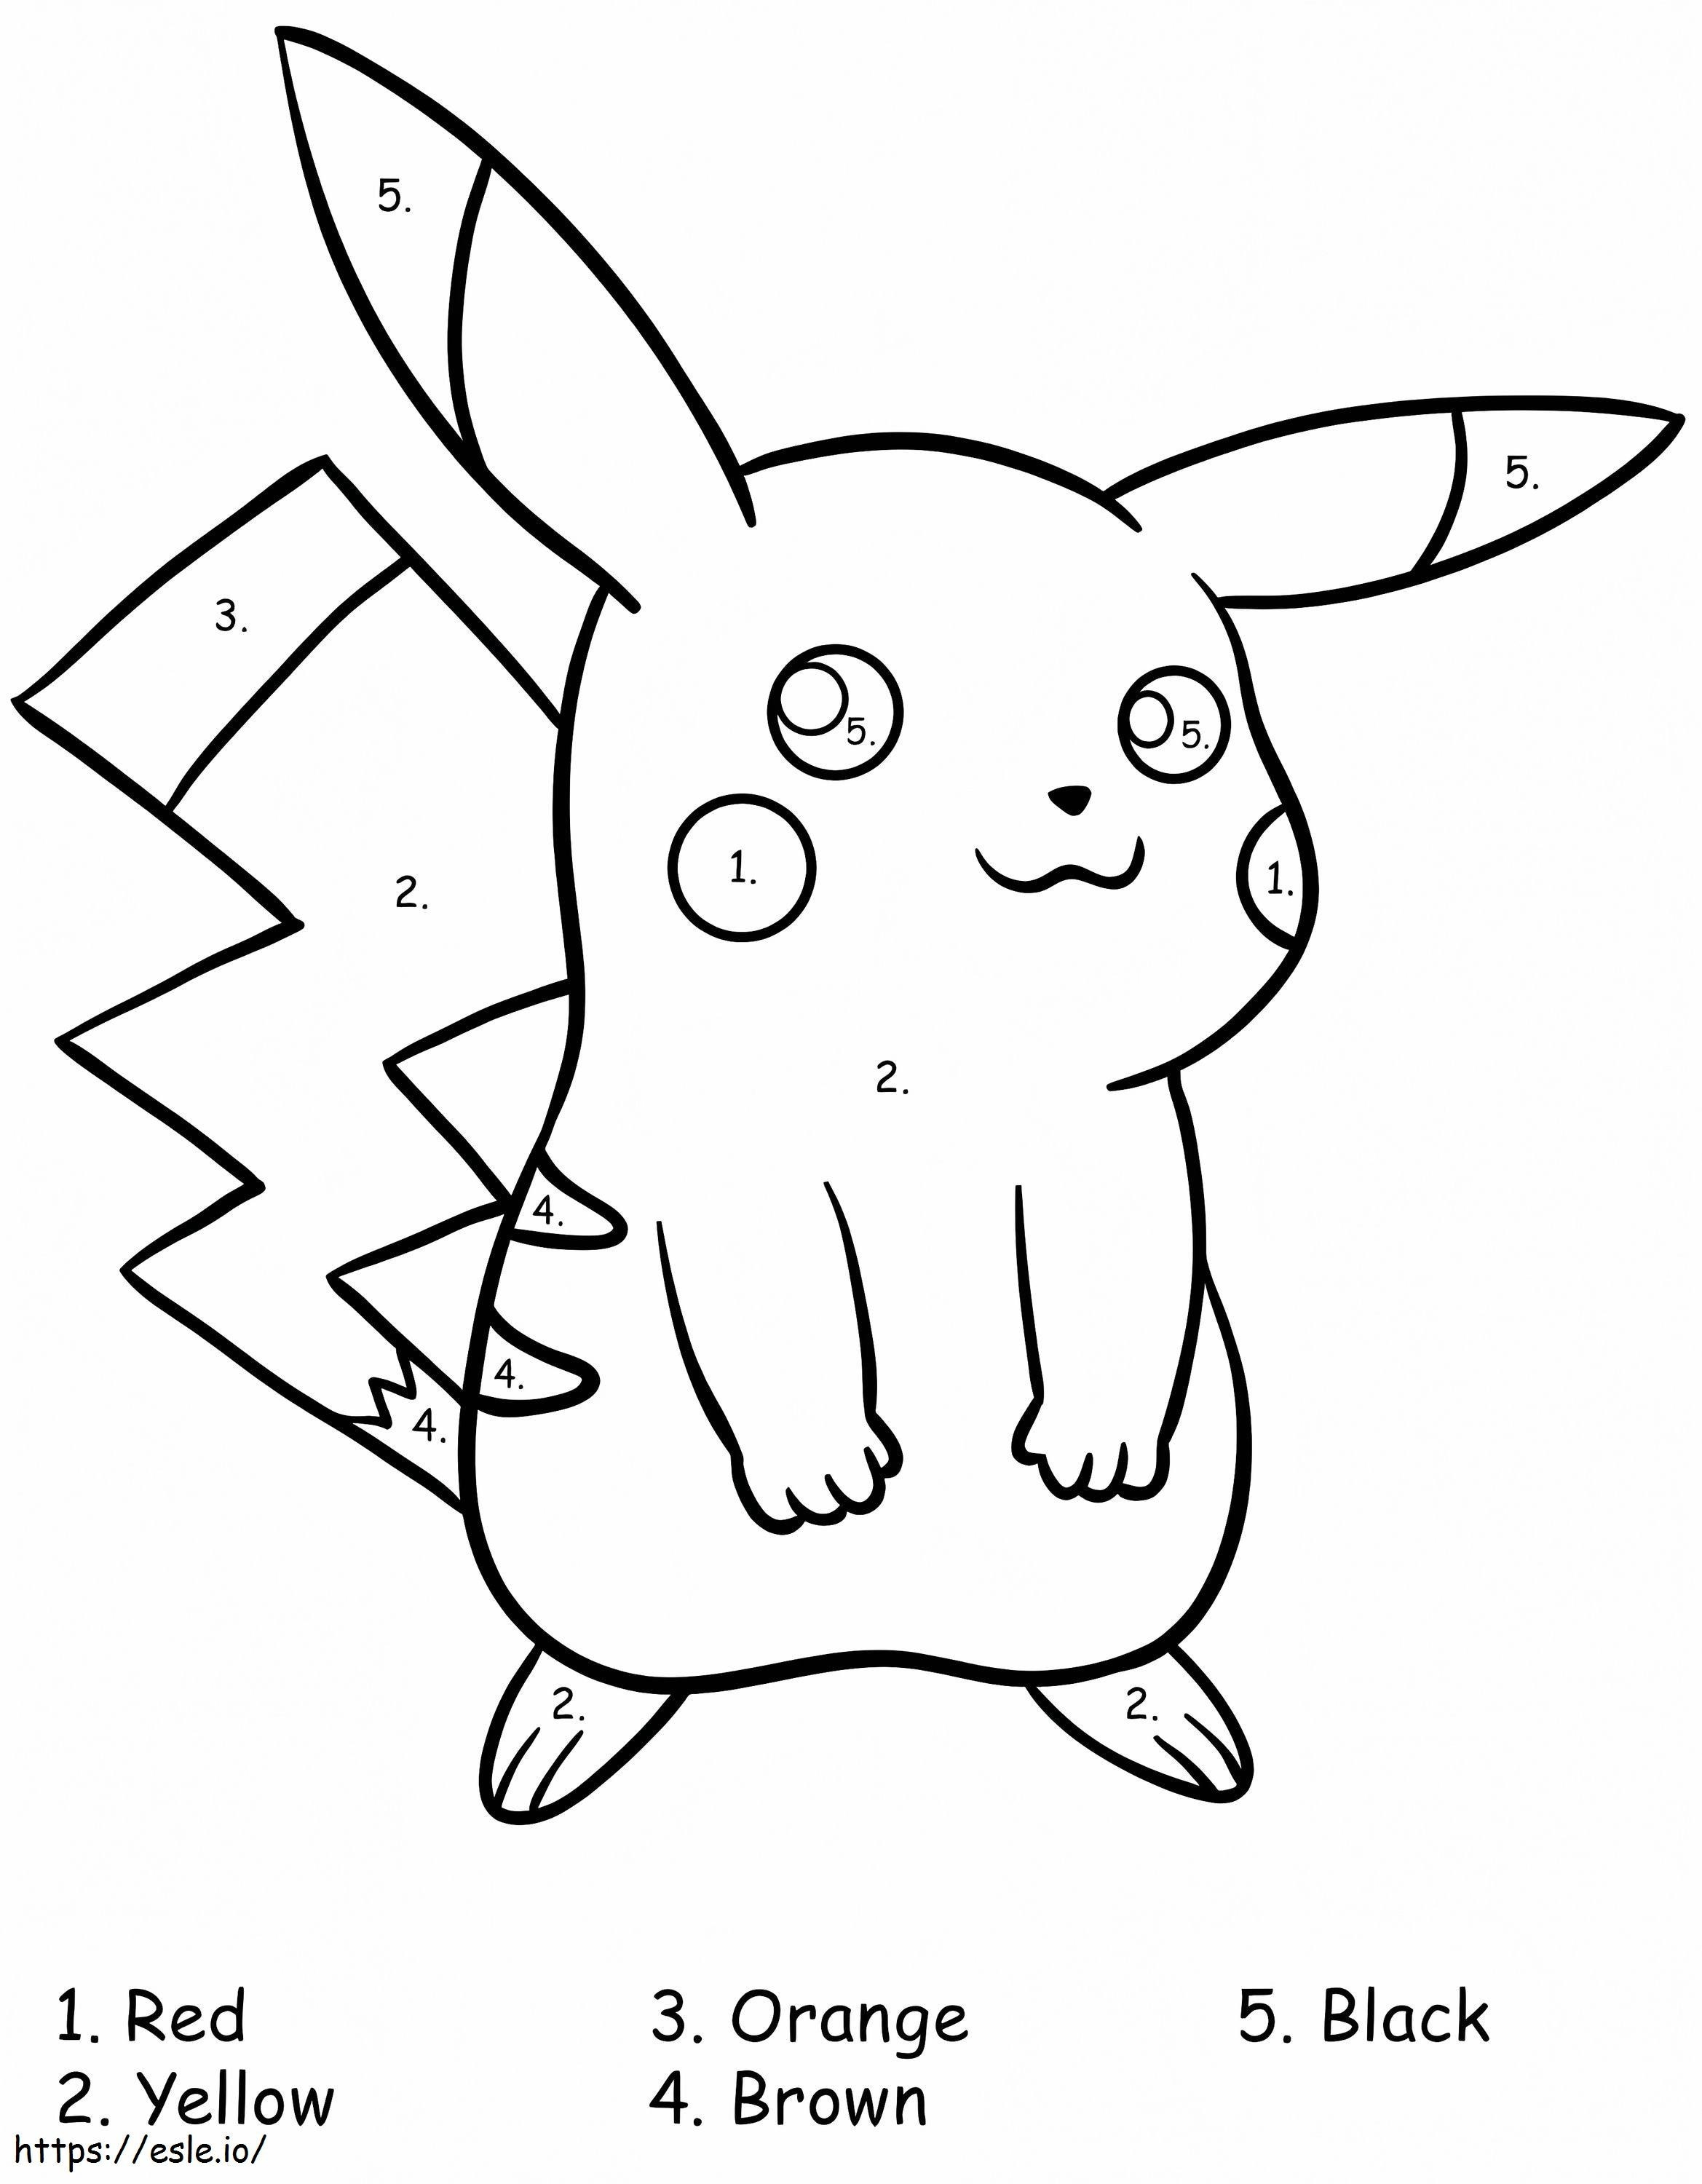 Coloriage Pikachu Pokémon Couleur Par Numéro à imprimer dessin